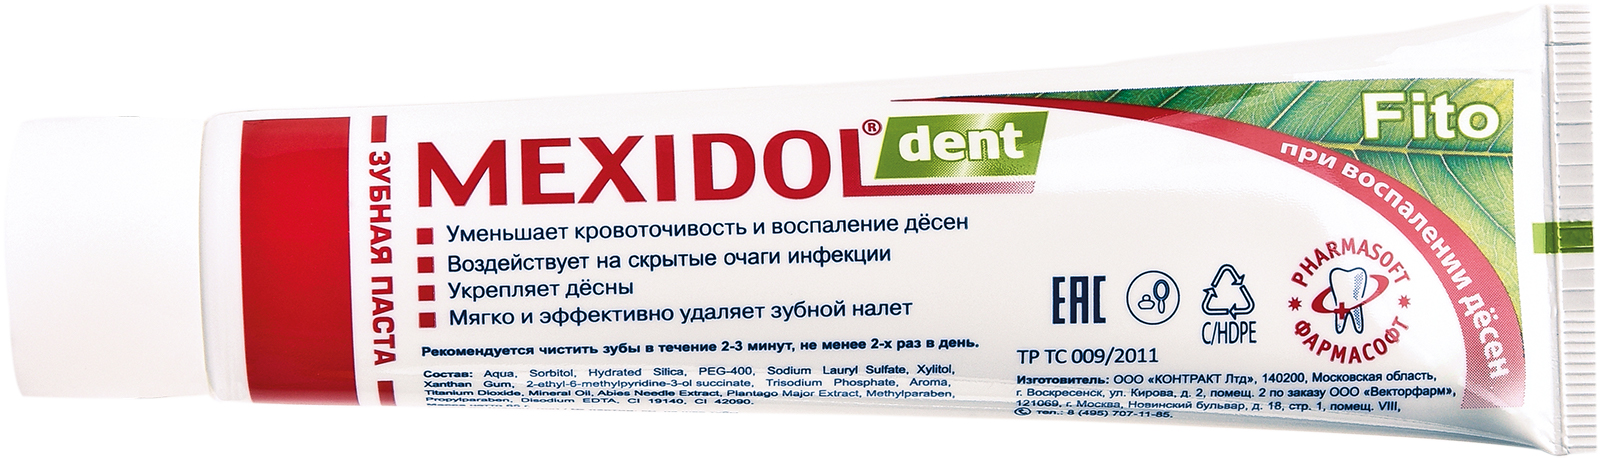 Мексидол Дент Фито, зубная паста, 100 г комплект зубная паста mexidol dent fito 100 г х 2 шт